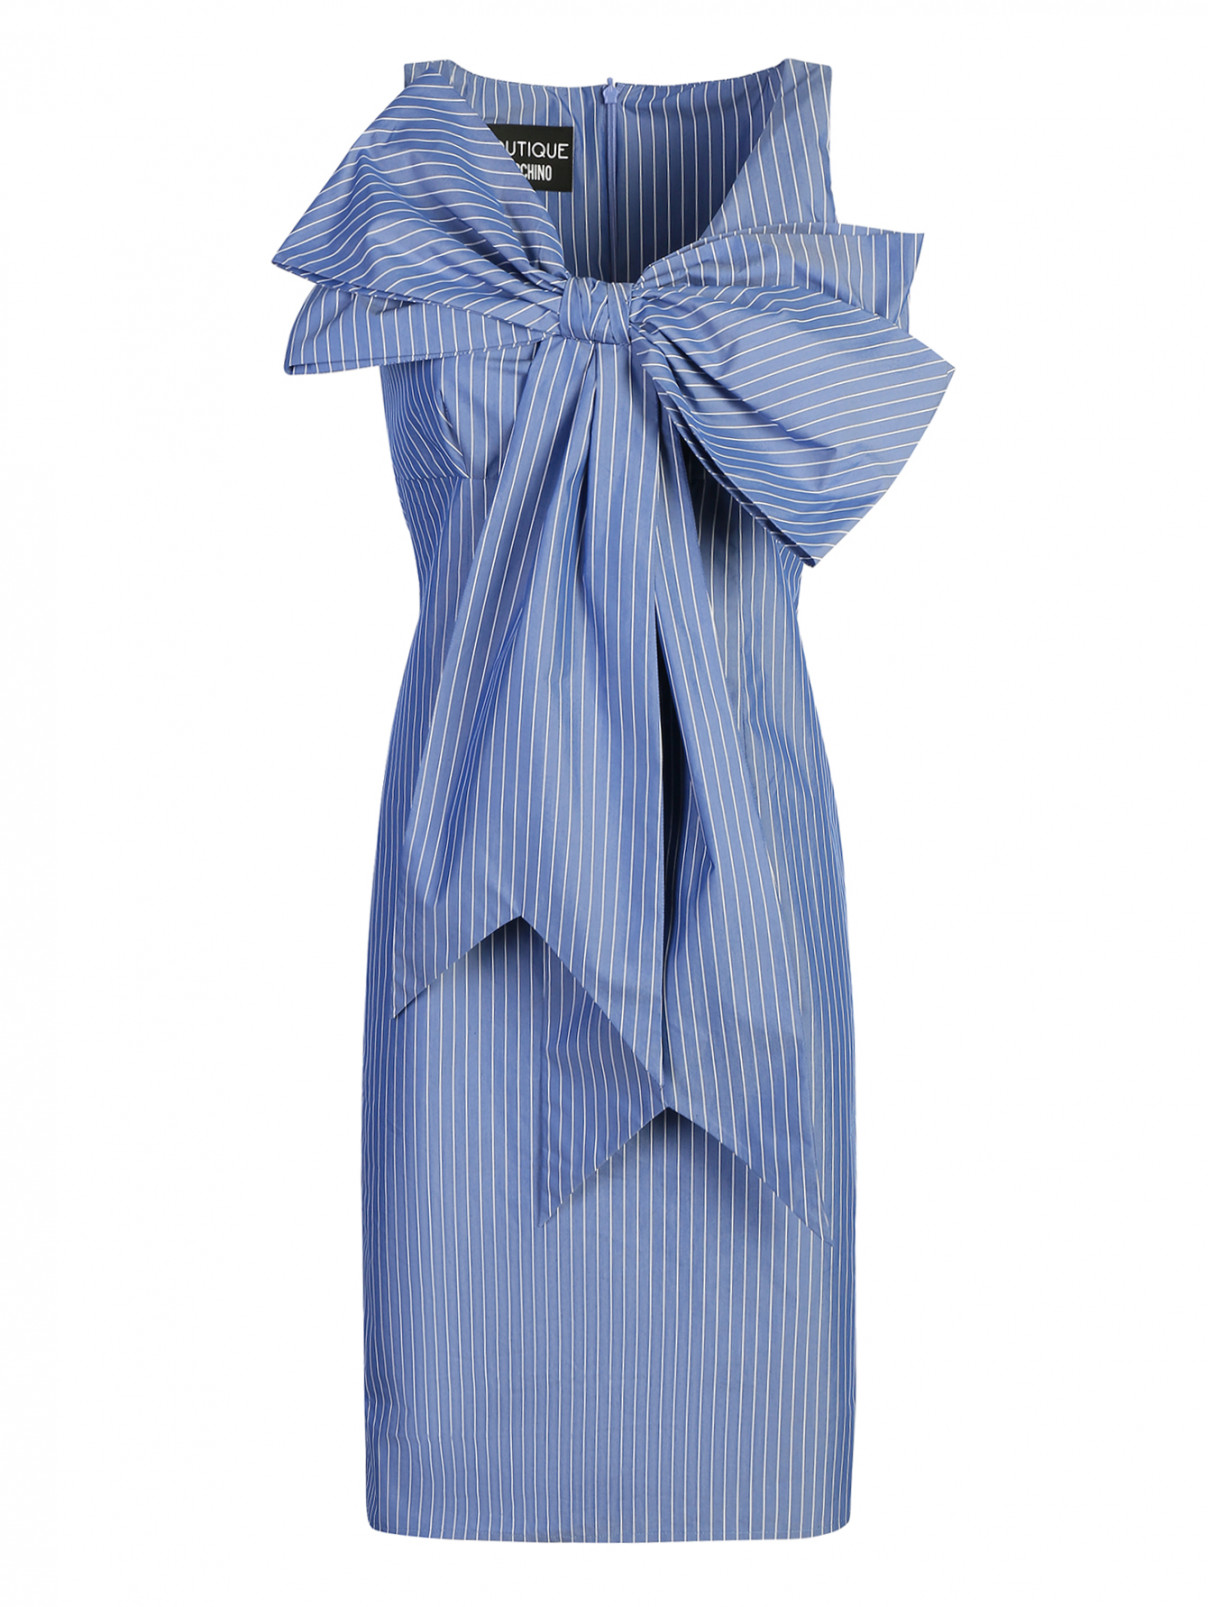 Платье из хлопка с узором полоска Moschino Boutique  –  Общий вид  – Цвет:  Синий